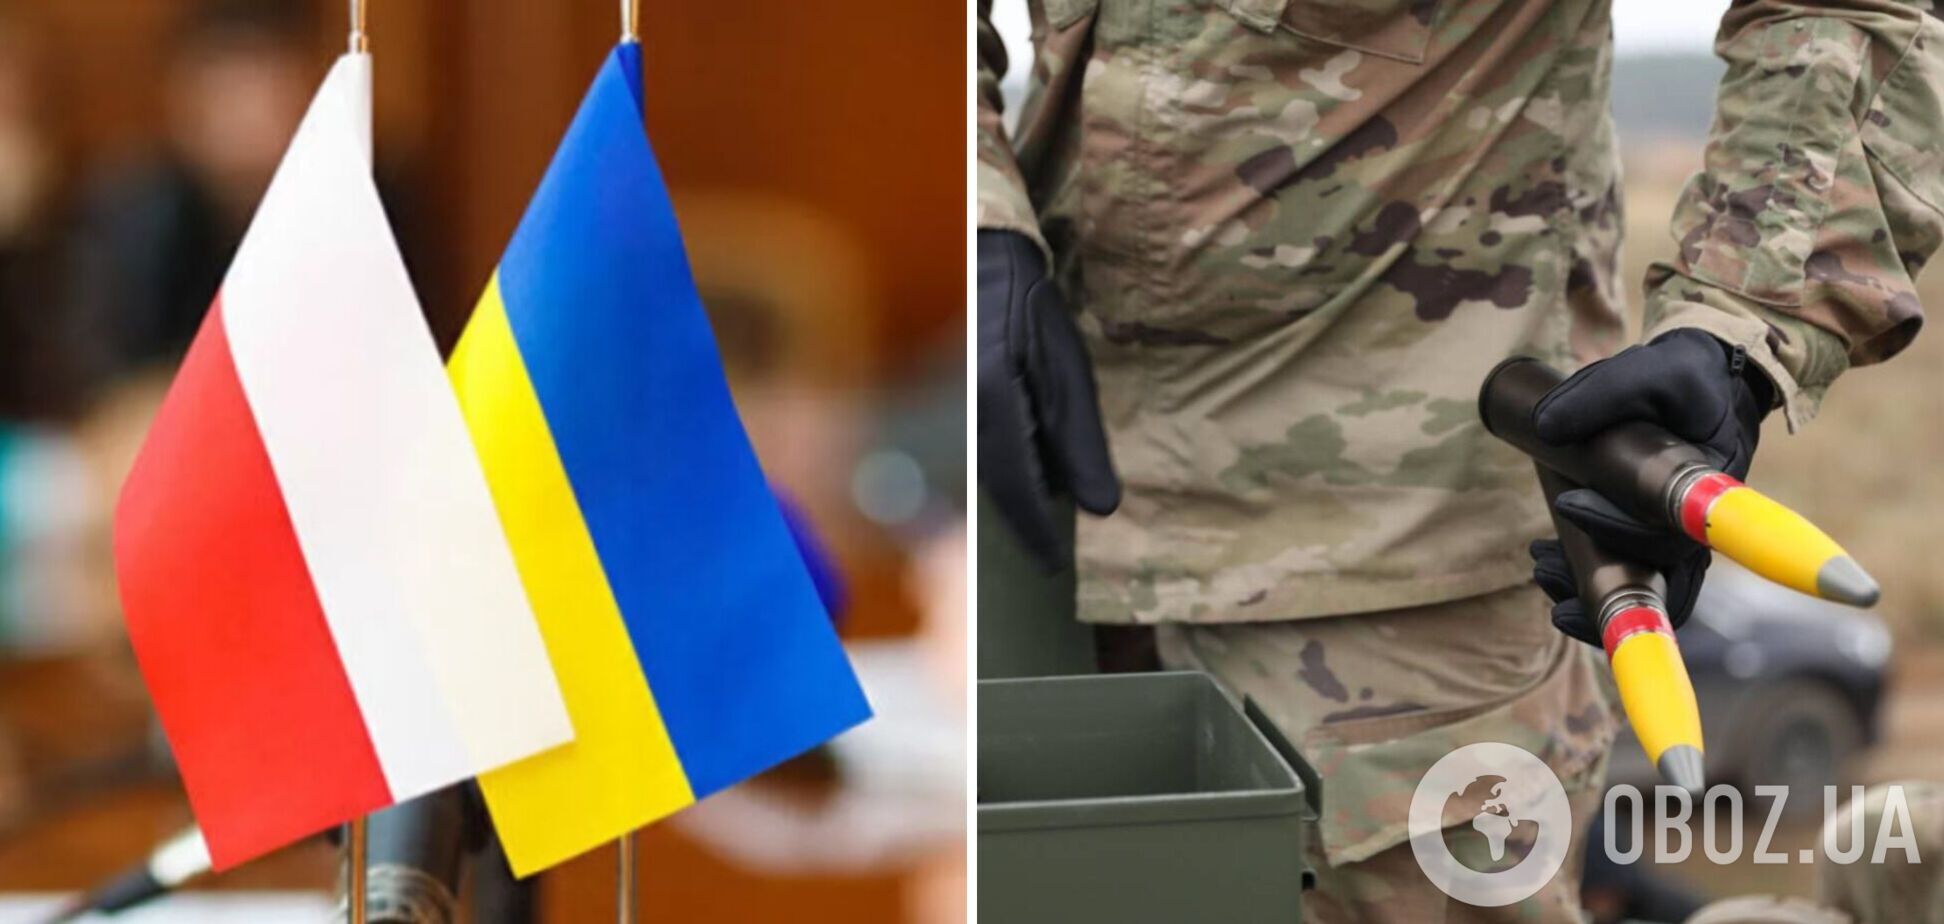 Польша предоставит Украине оборонительное вооружение из-за риска агрессии РФ: появились подробности